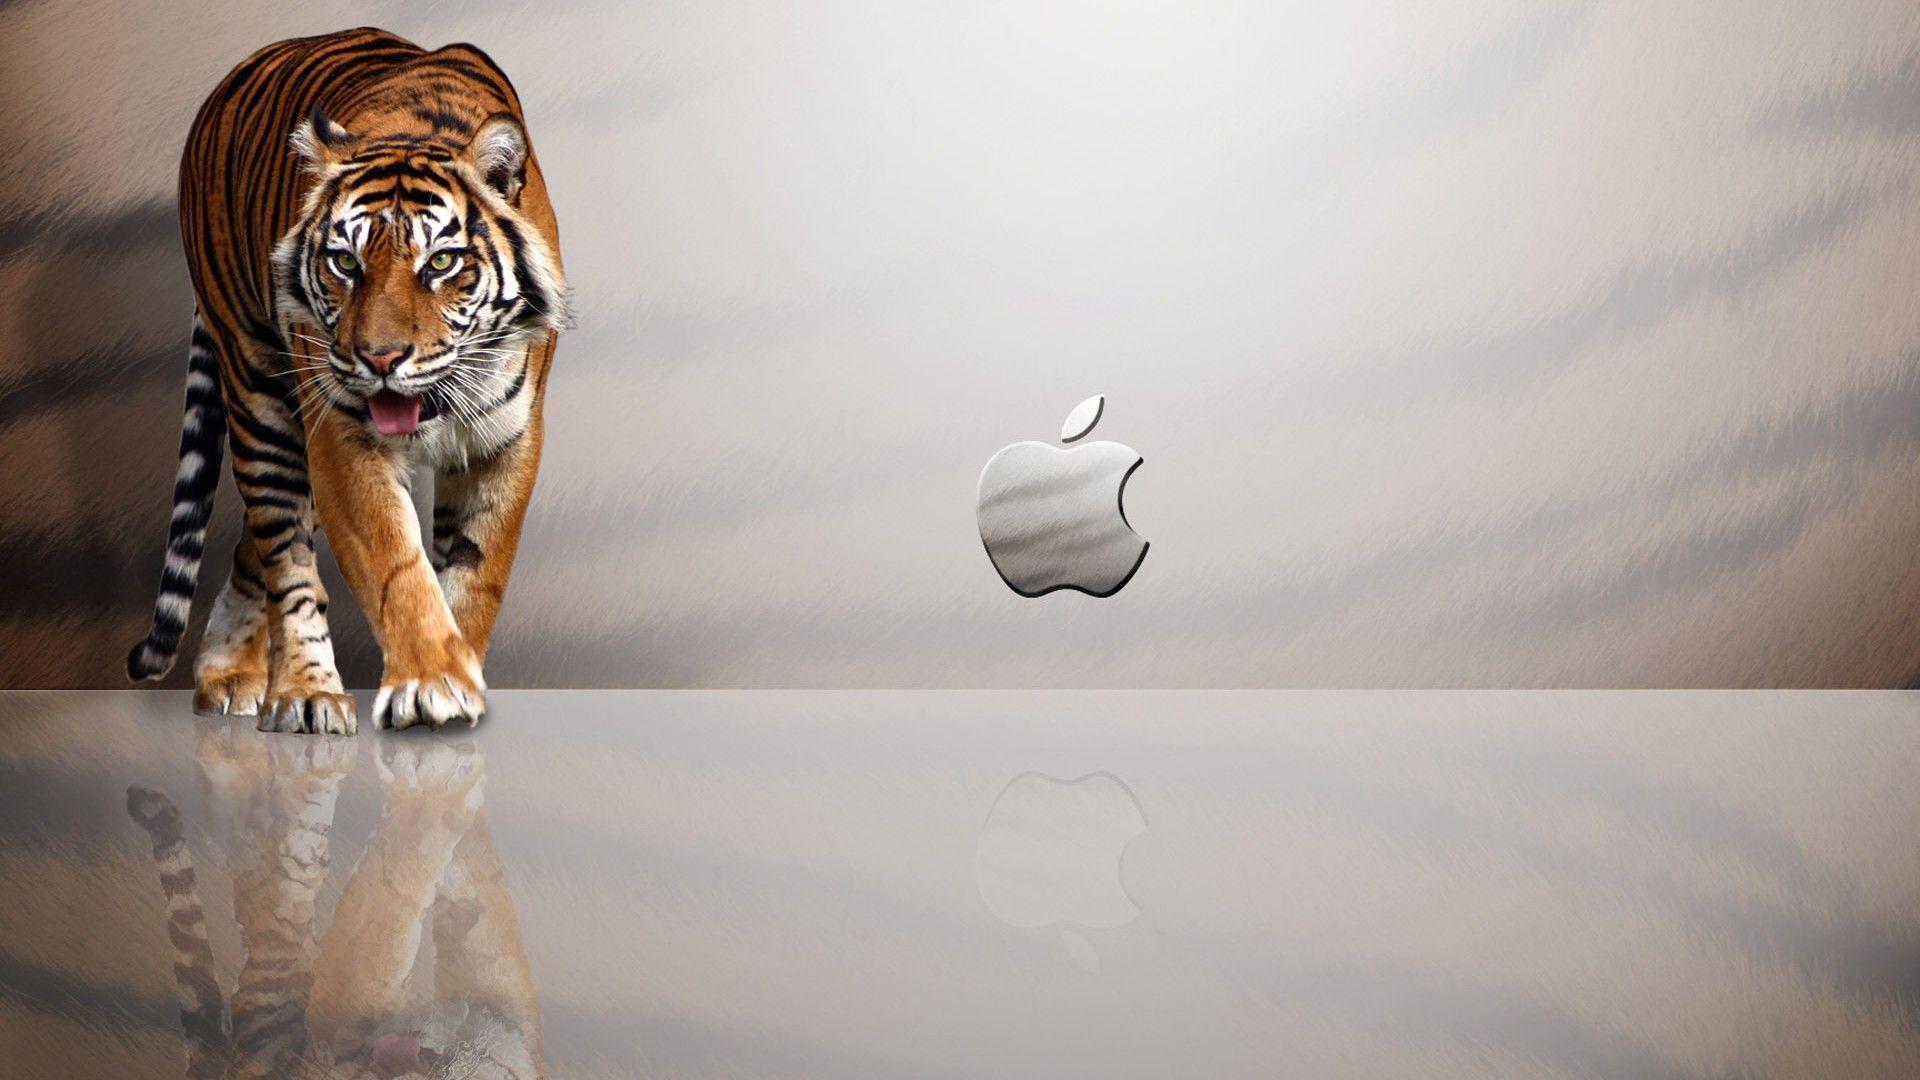 Apple Mac OS X Tiger Computer Wallpaper